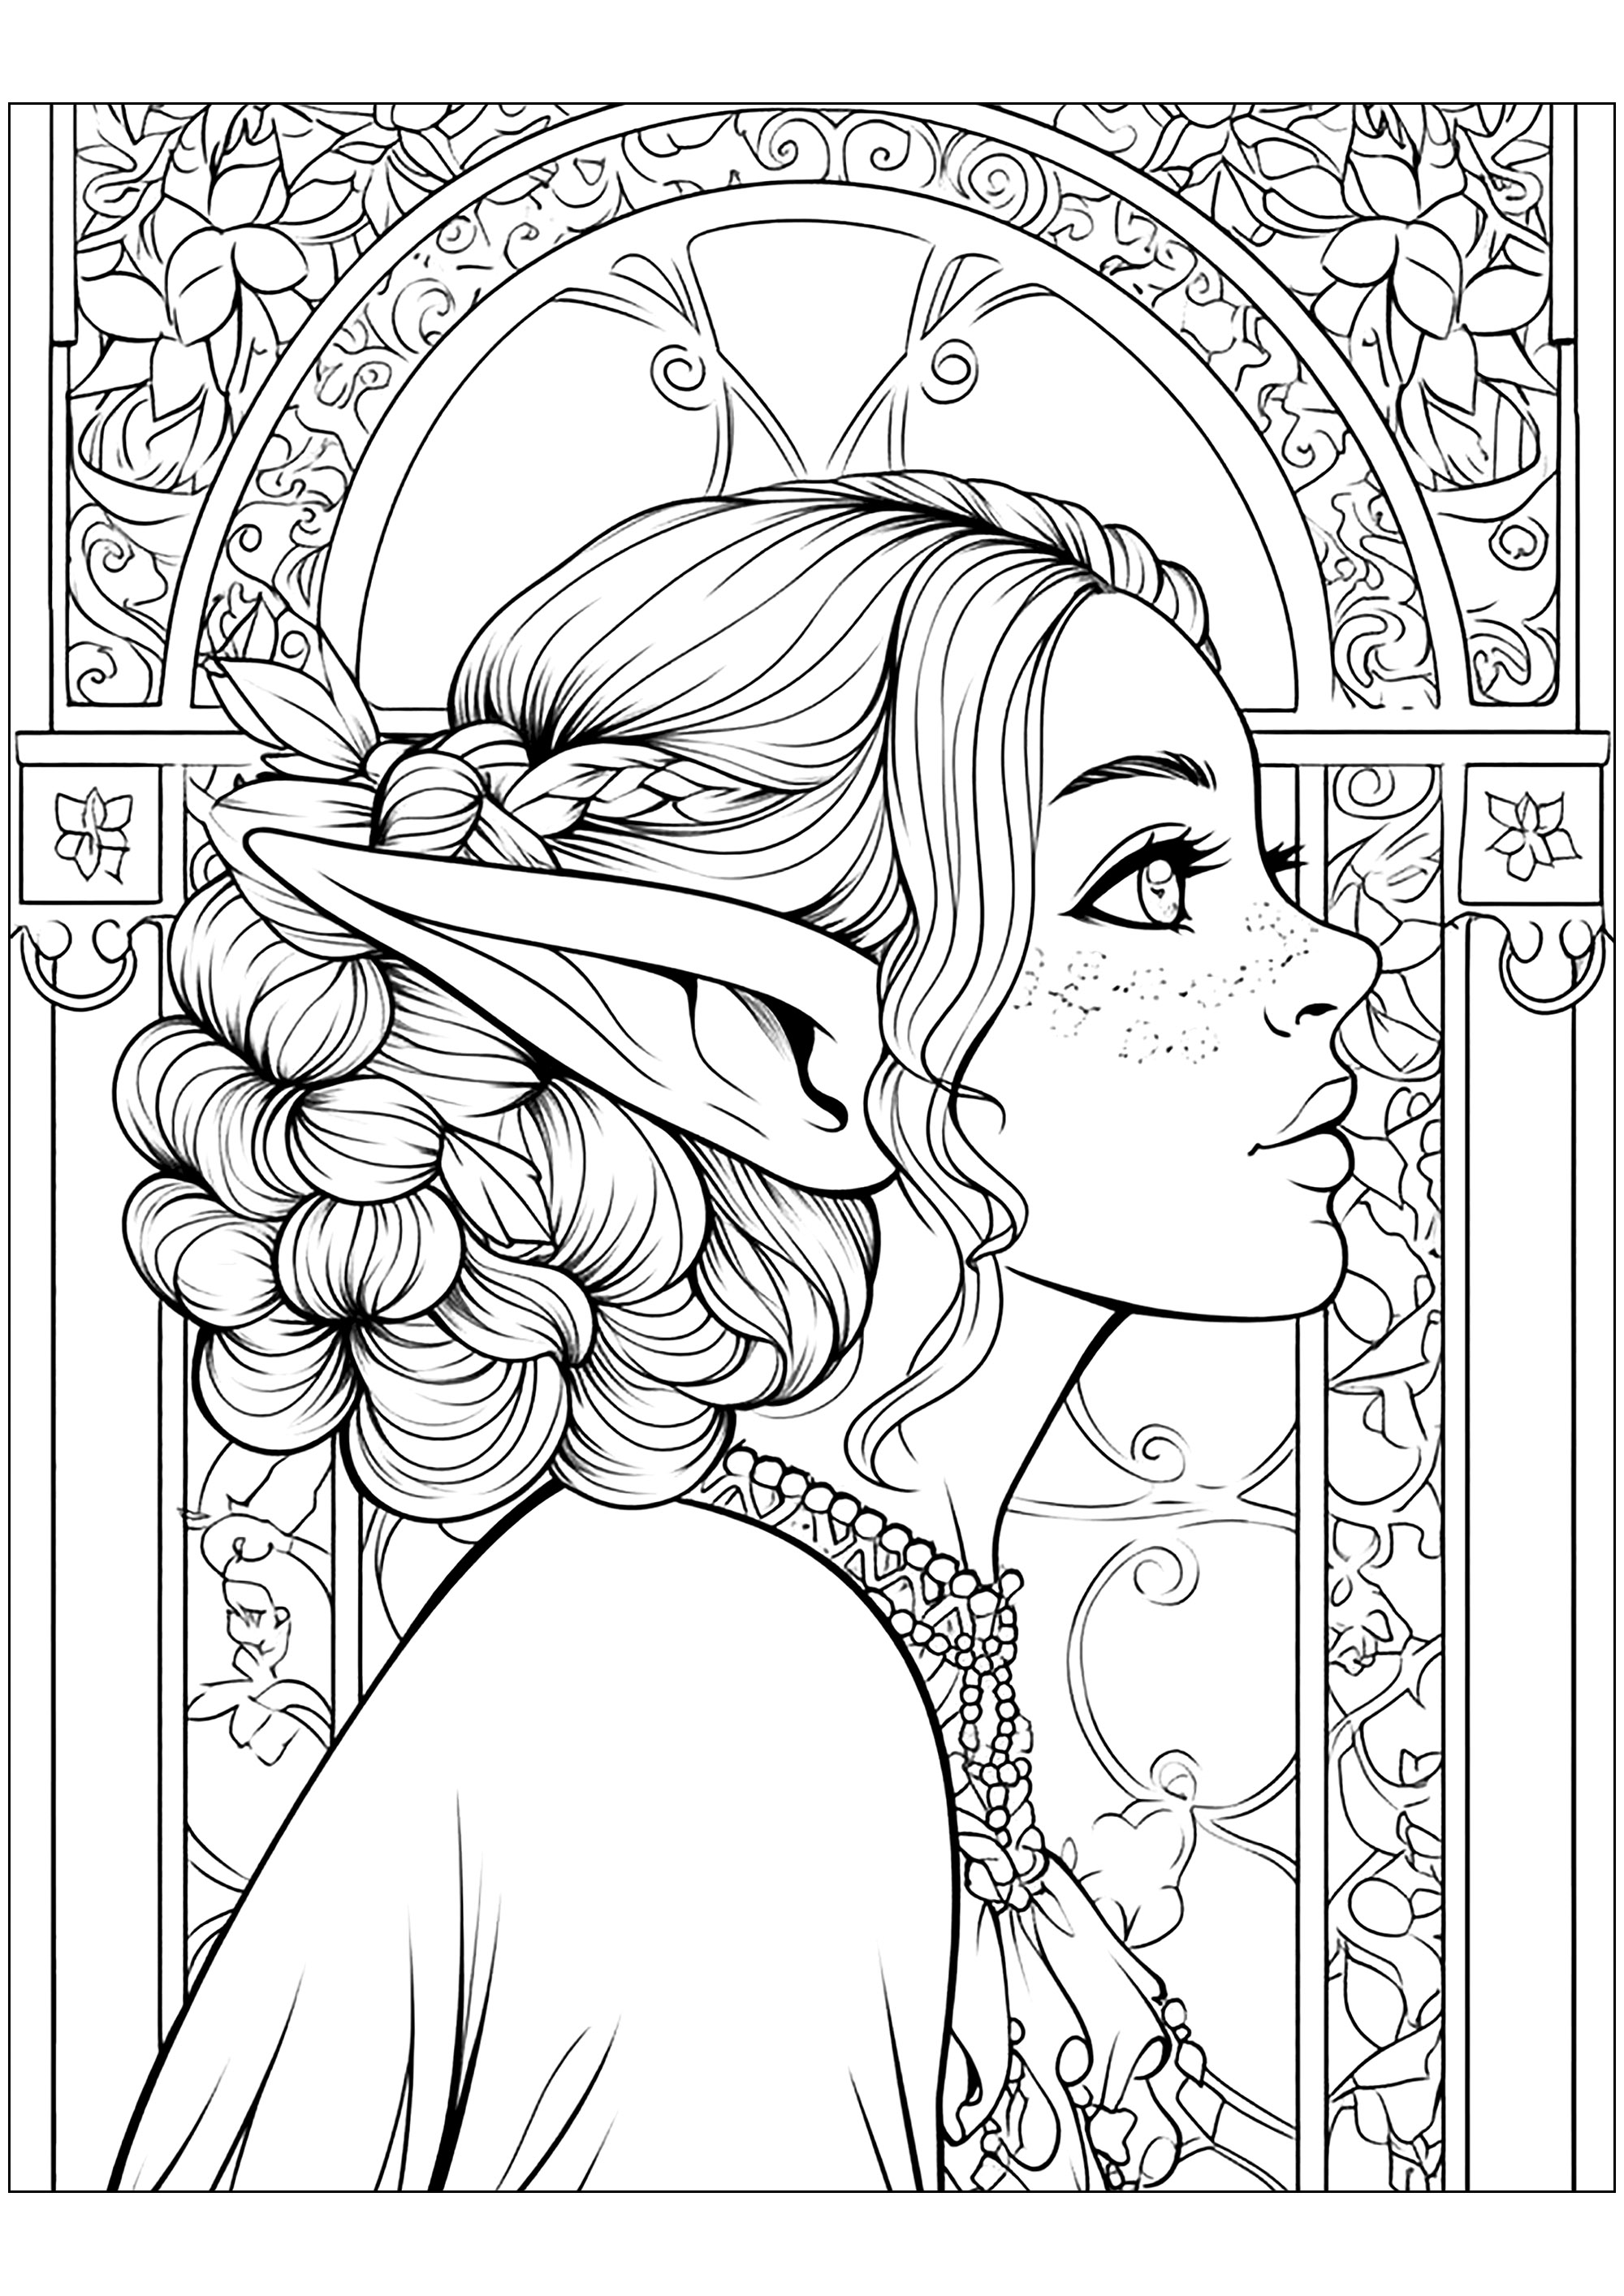 Zeichnung einer Elfe im Art Nouveau-Stil. Hübsche Details zum Ausmalen des Hintergrunds